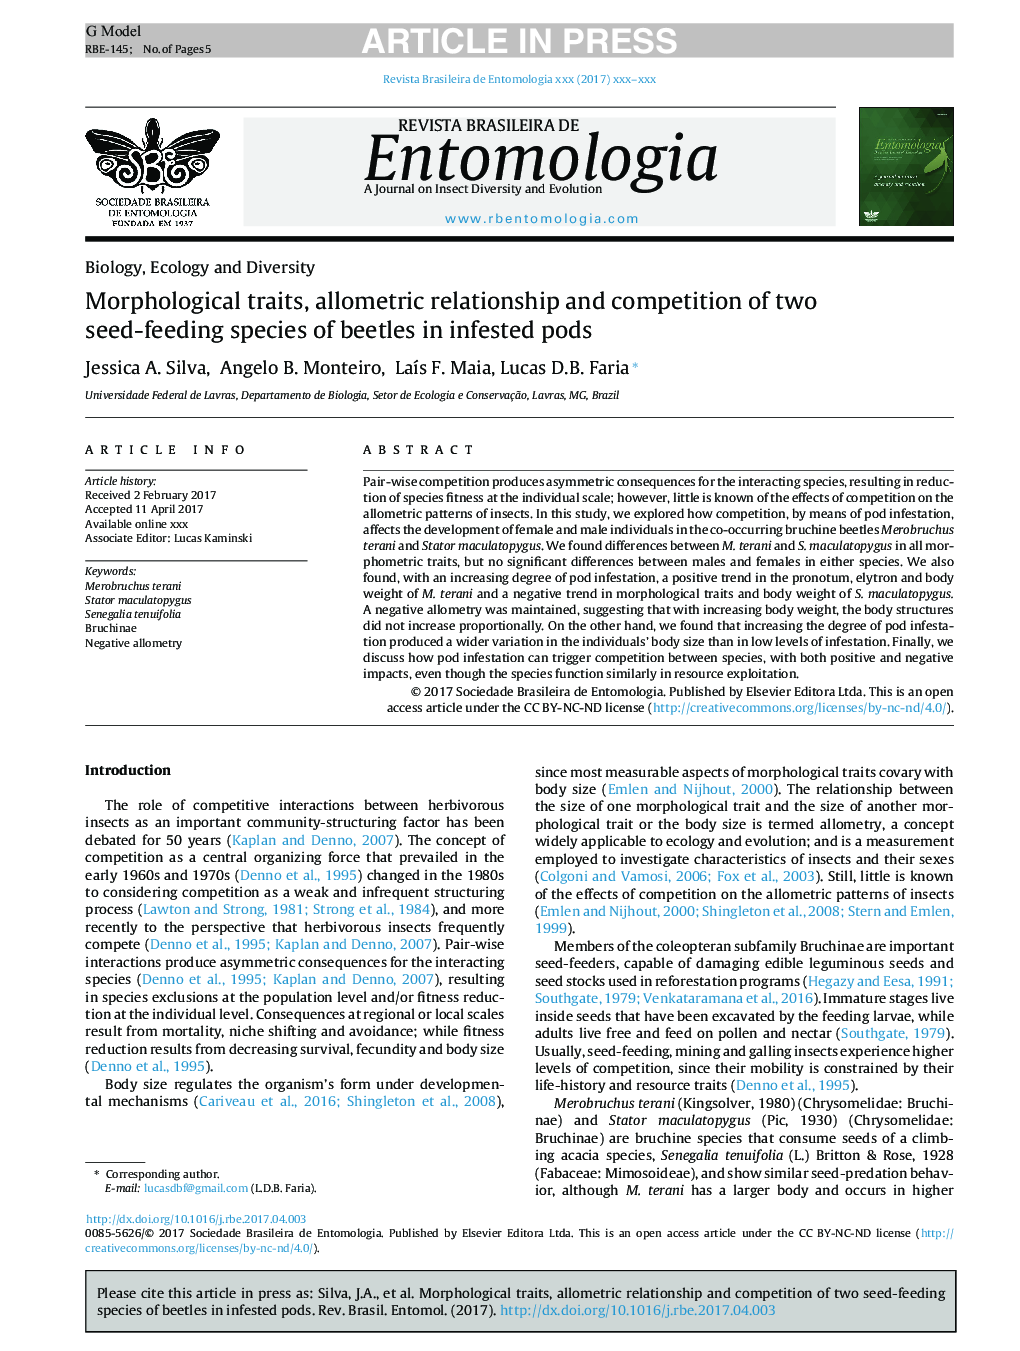 صفات مورفولوژیکی، رابطه آلومتریایی و رقابت دو گونه بذر تغذیه سوسک در غلاف های آلوده 